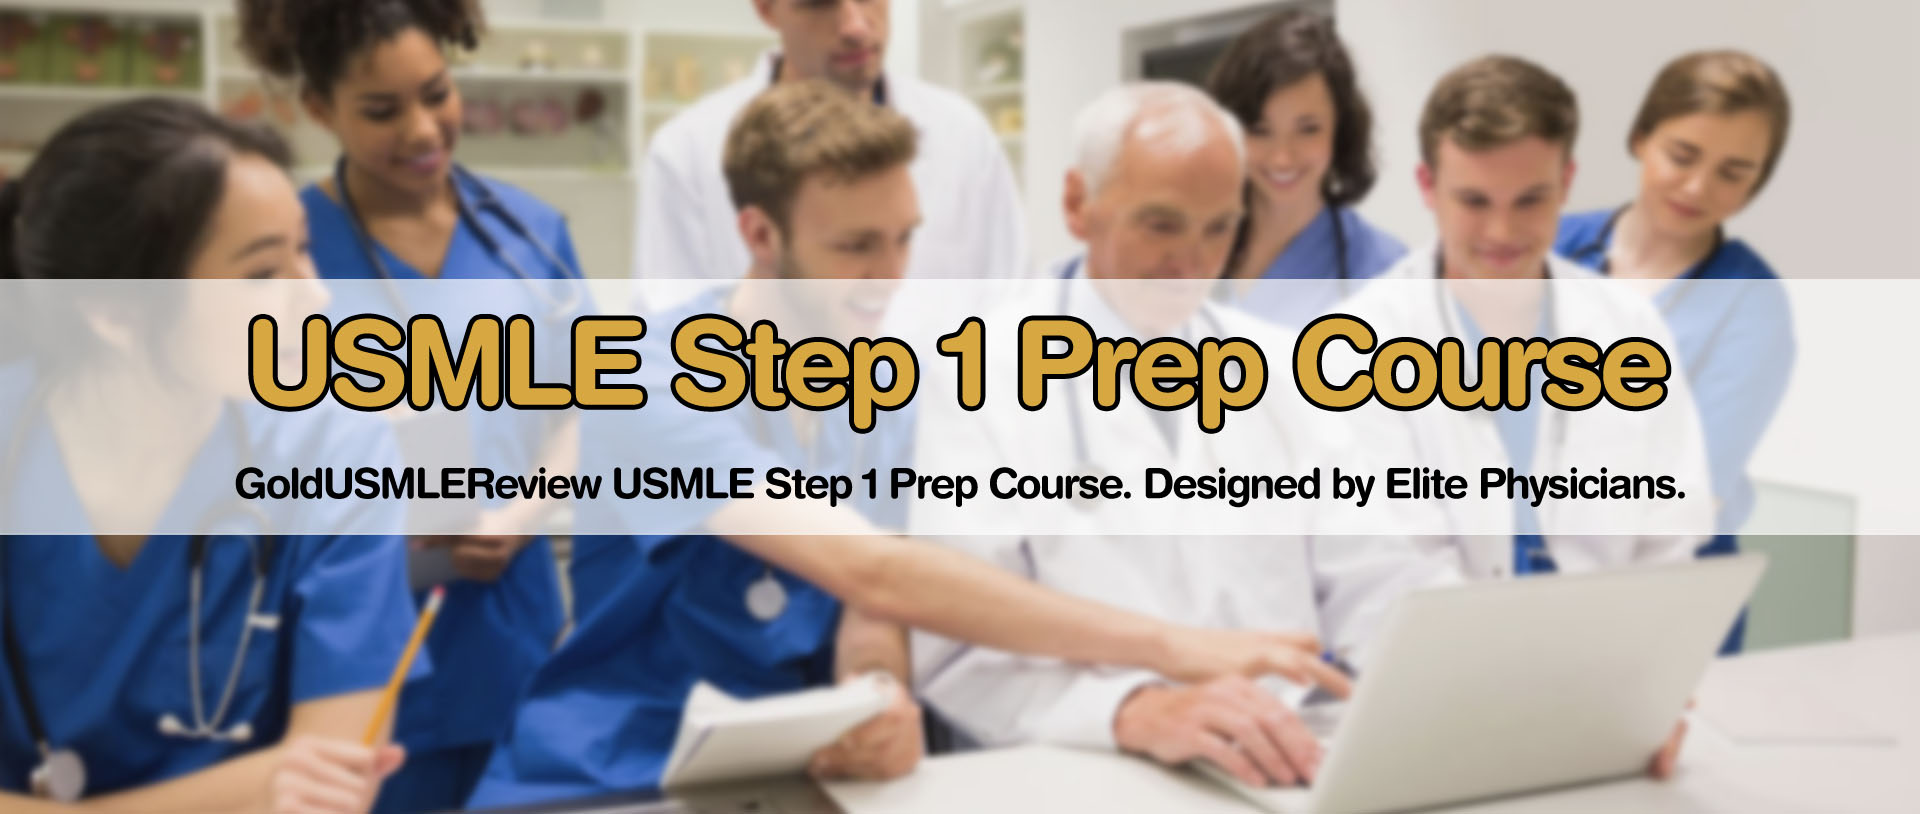 USMLE Step 1 Prep Course